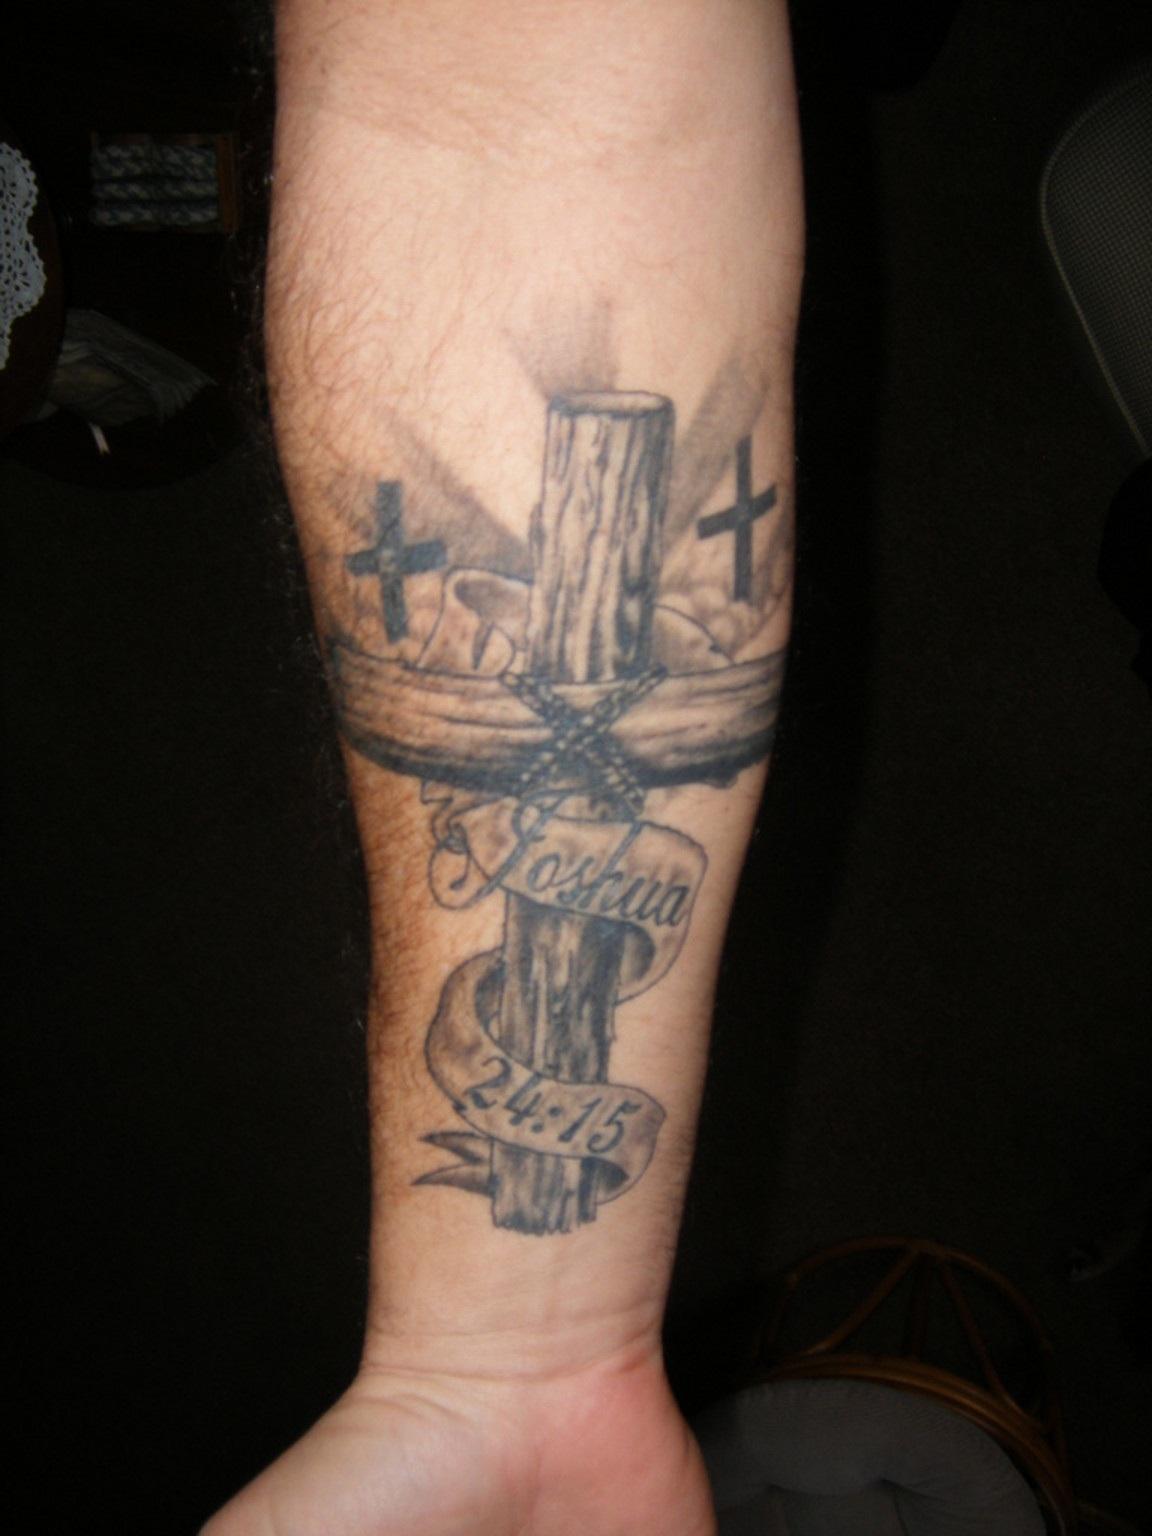 Awesome Holy Christian Tattoo On Wrist